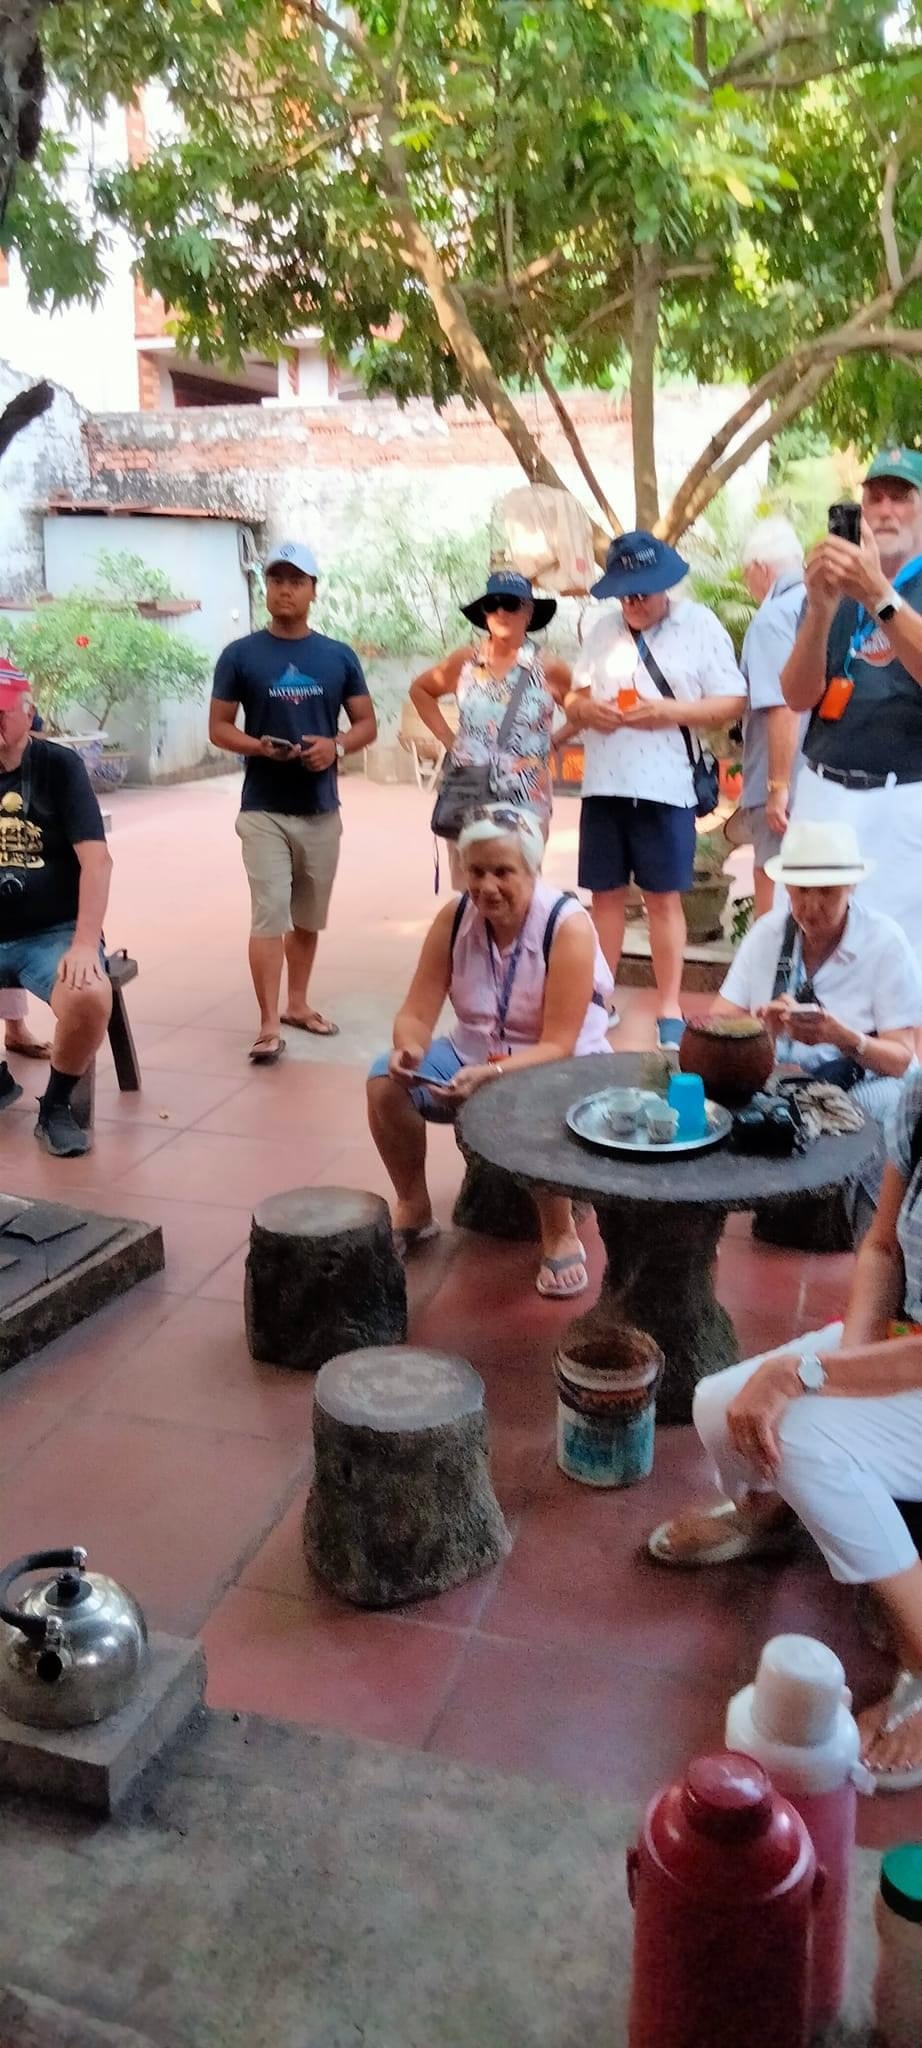 du khách nước ngoài (Anh, Đức, Pháp) đến thăm làng nghề rèn Bàn Mạch.